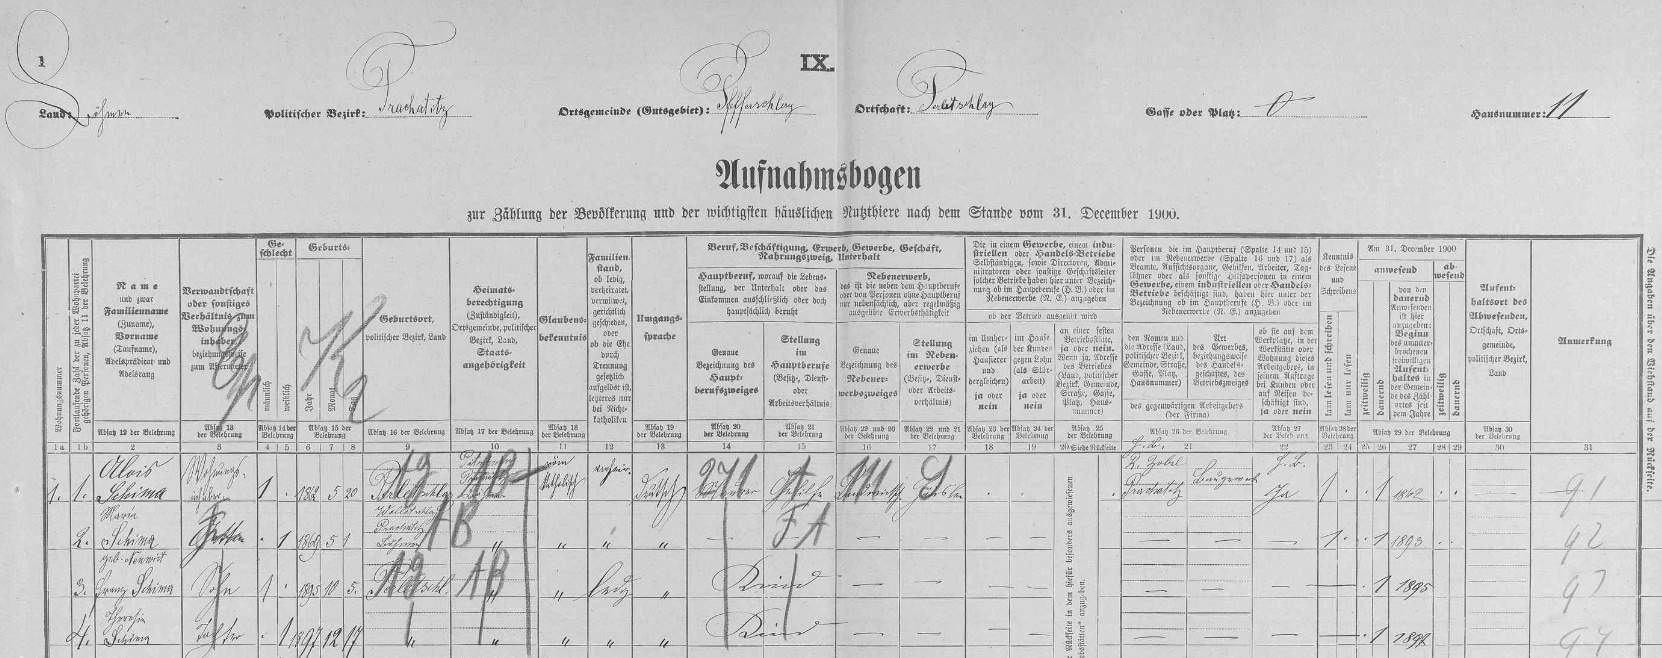 Arch sčítání lidu z roku 1900 pro stavení čp. 11 v Perlovicích s tehdy pětiletým Franzem, jeho rodiči a sestrou Theresií